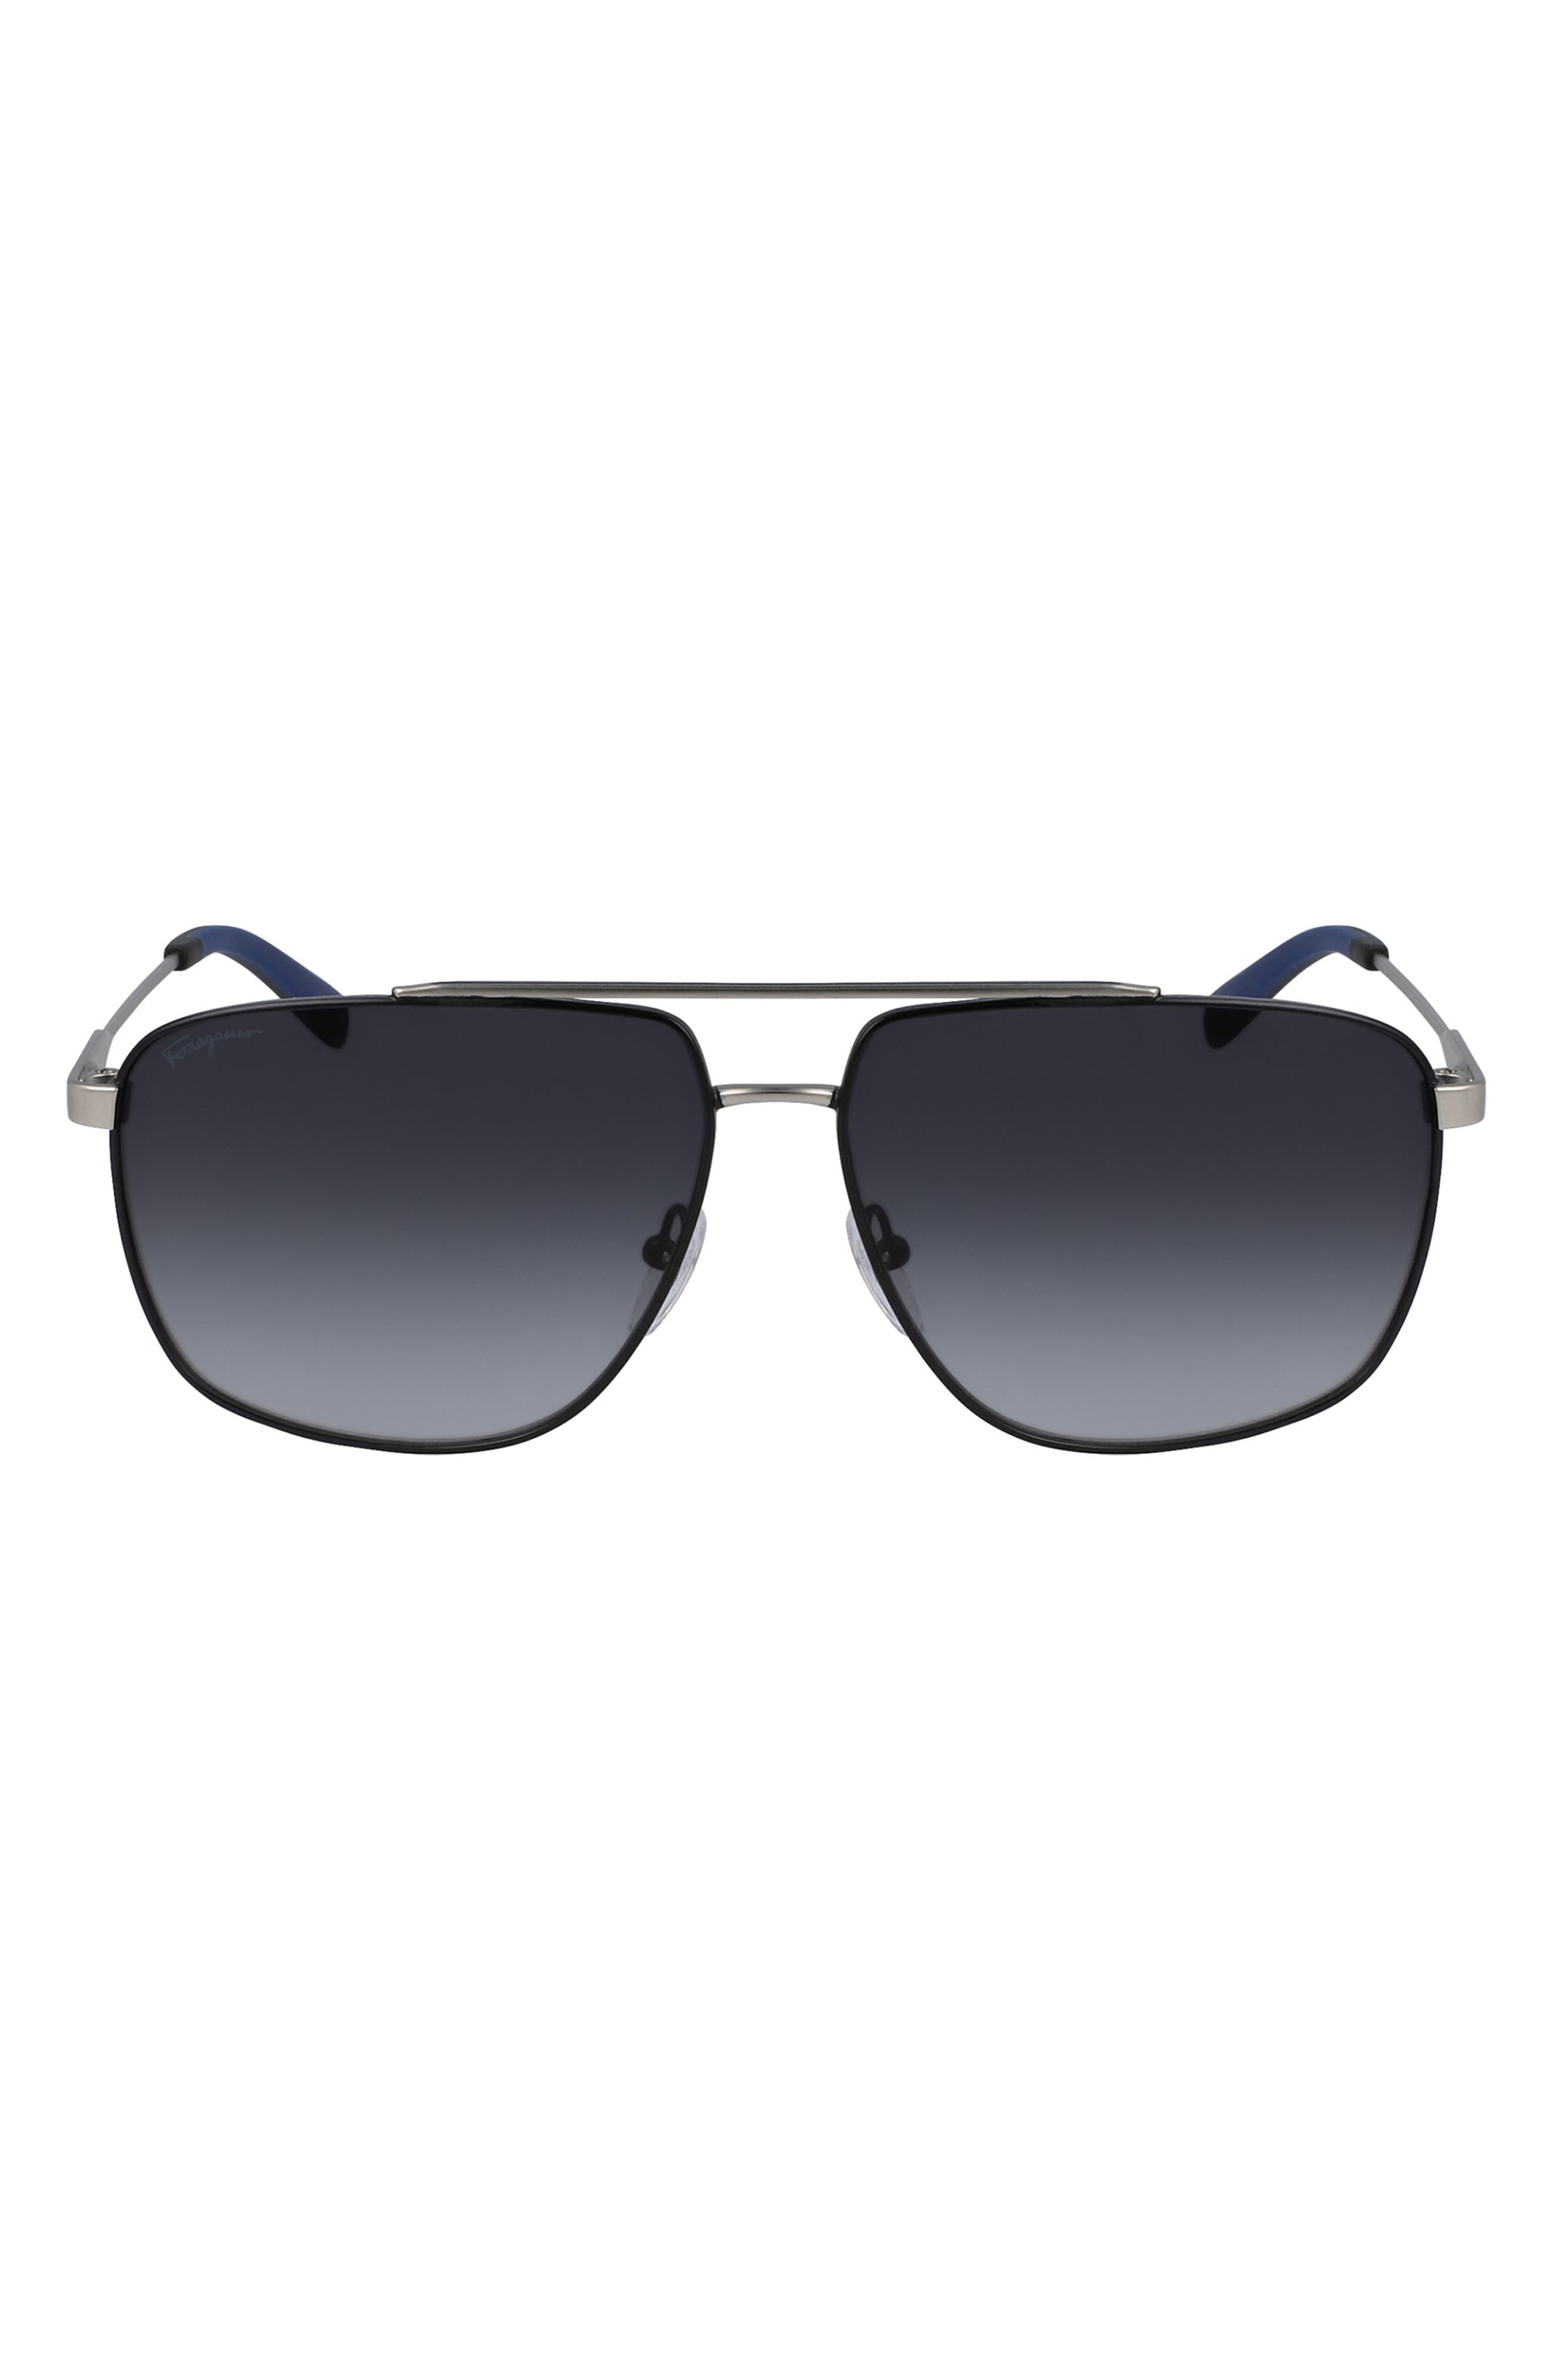 Salvatore Ferragamo 60mm Gradient Navigator Sunglasses in Matte Light Ruthenium/Grey at Nordstrom